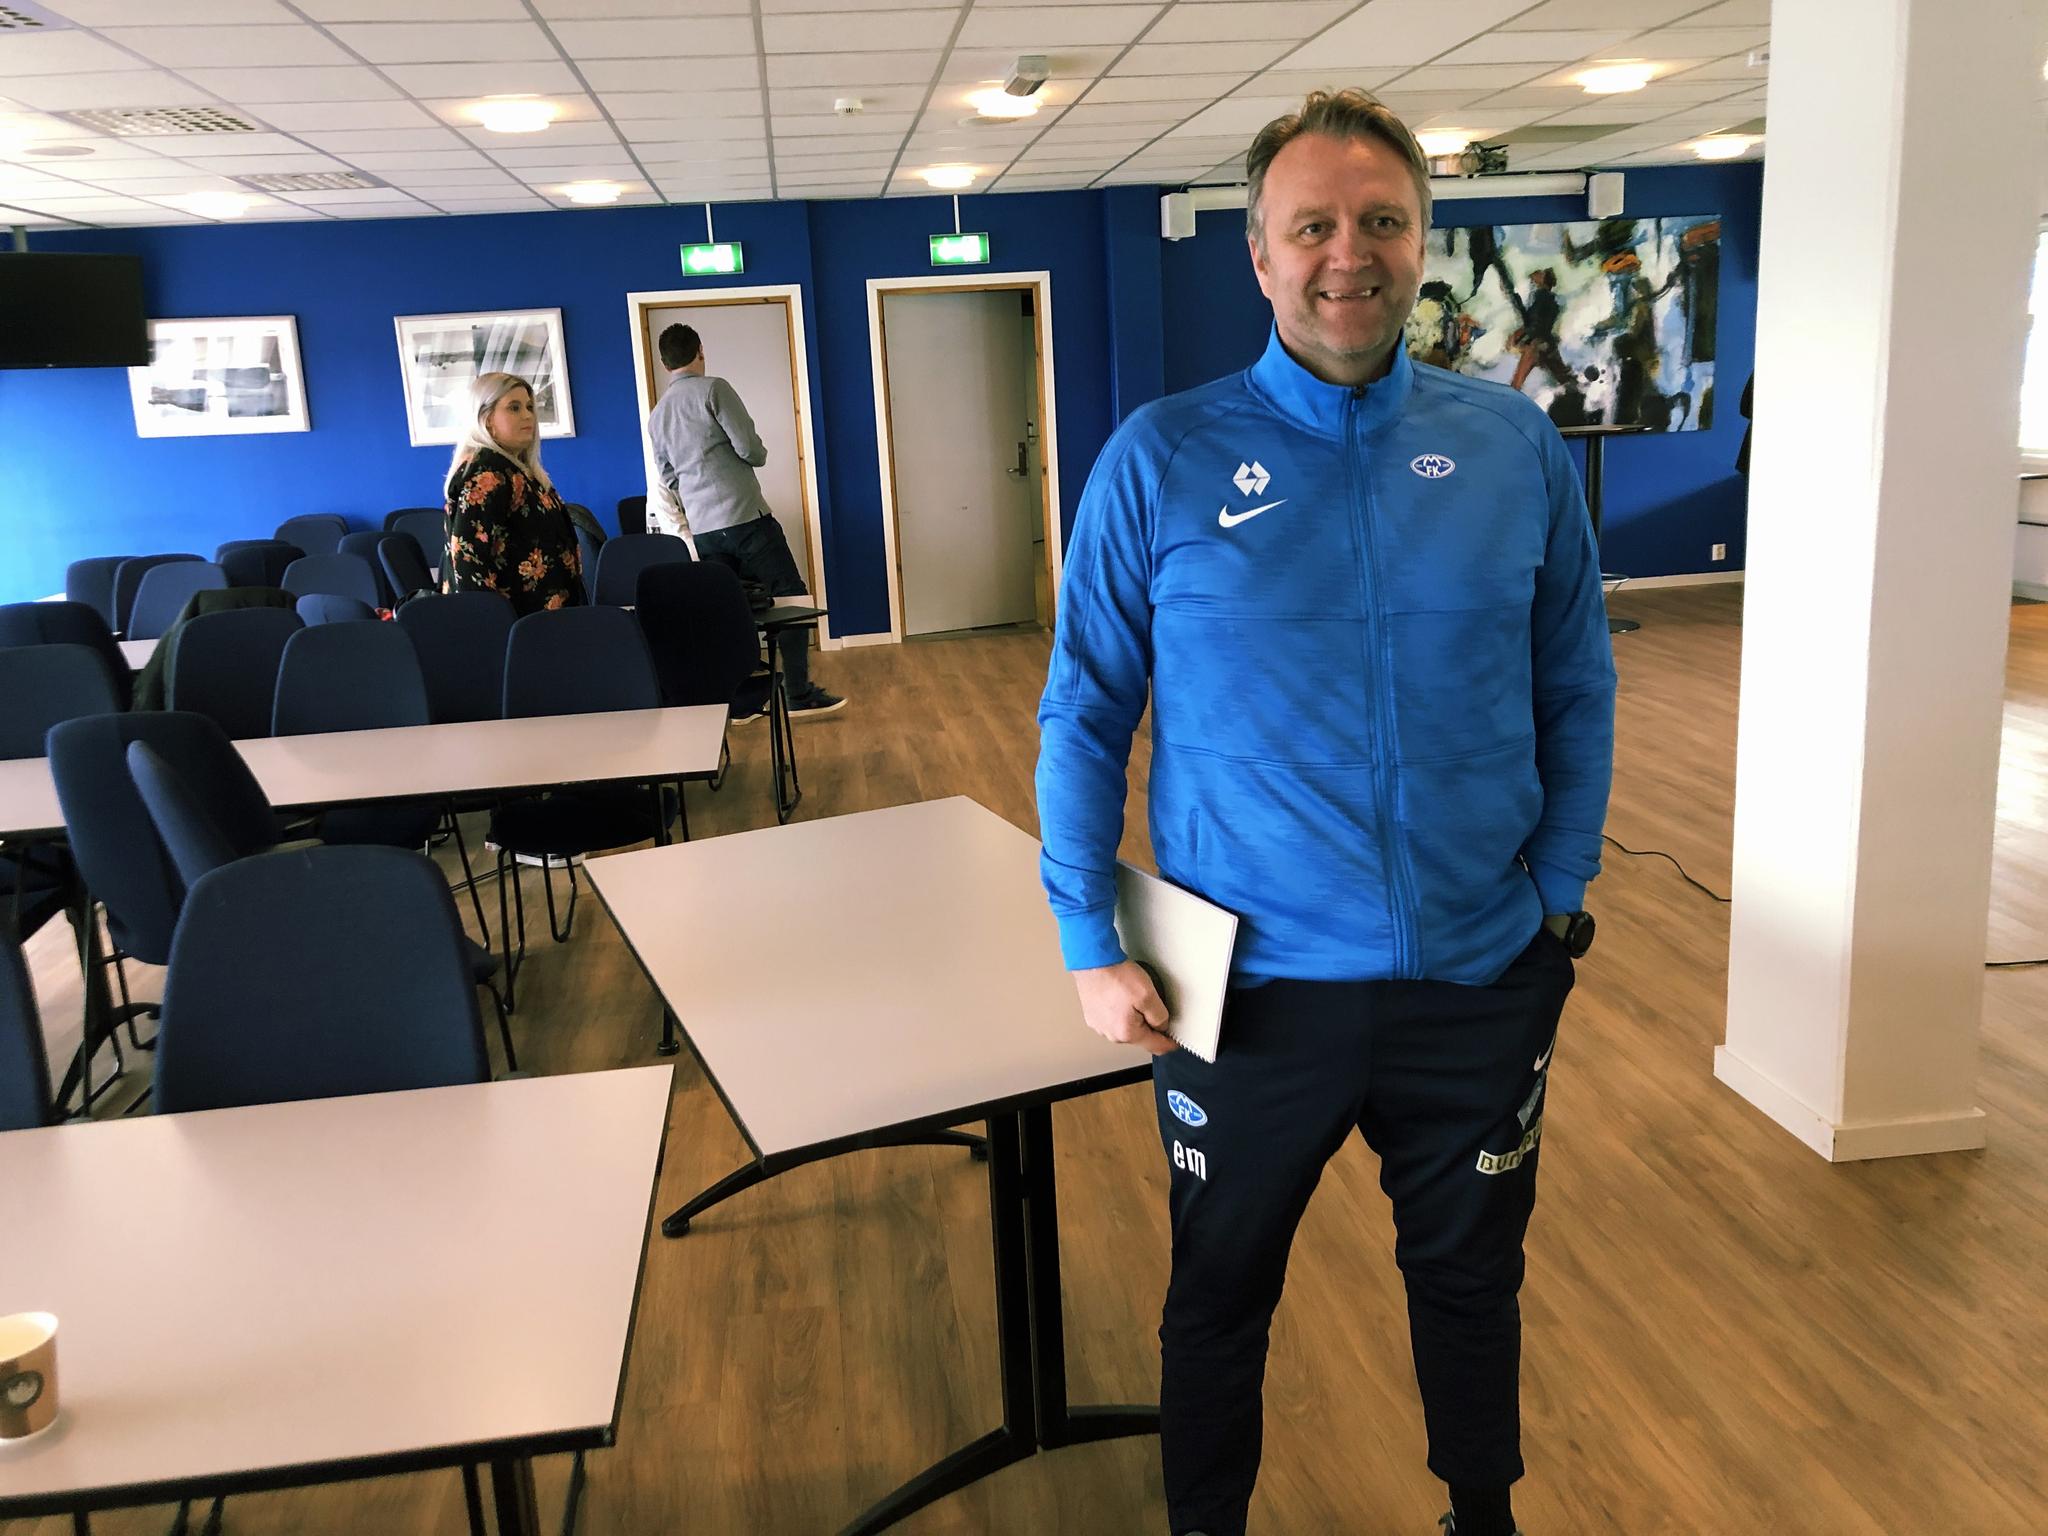 Molde-trener Erling Moe er godt fornøyd med nyheten fra Norges Fotballforbund.